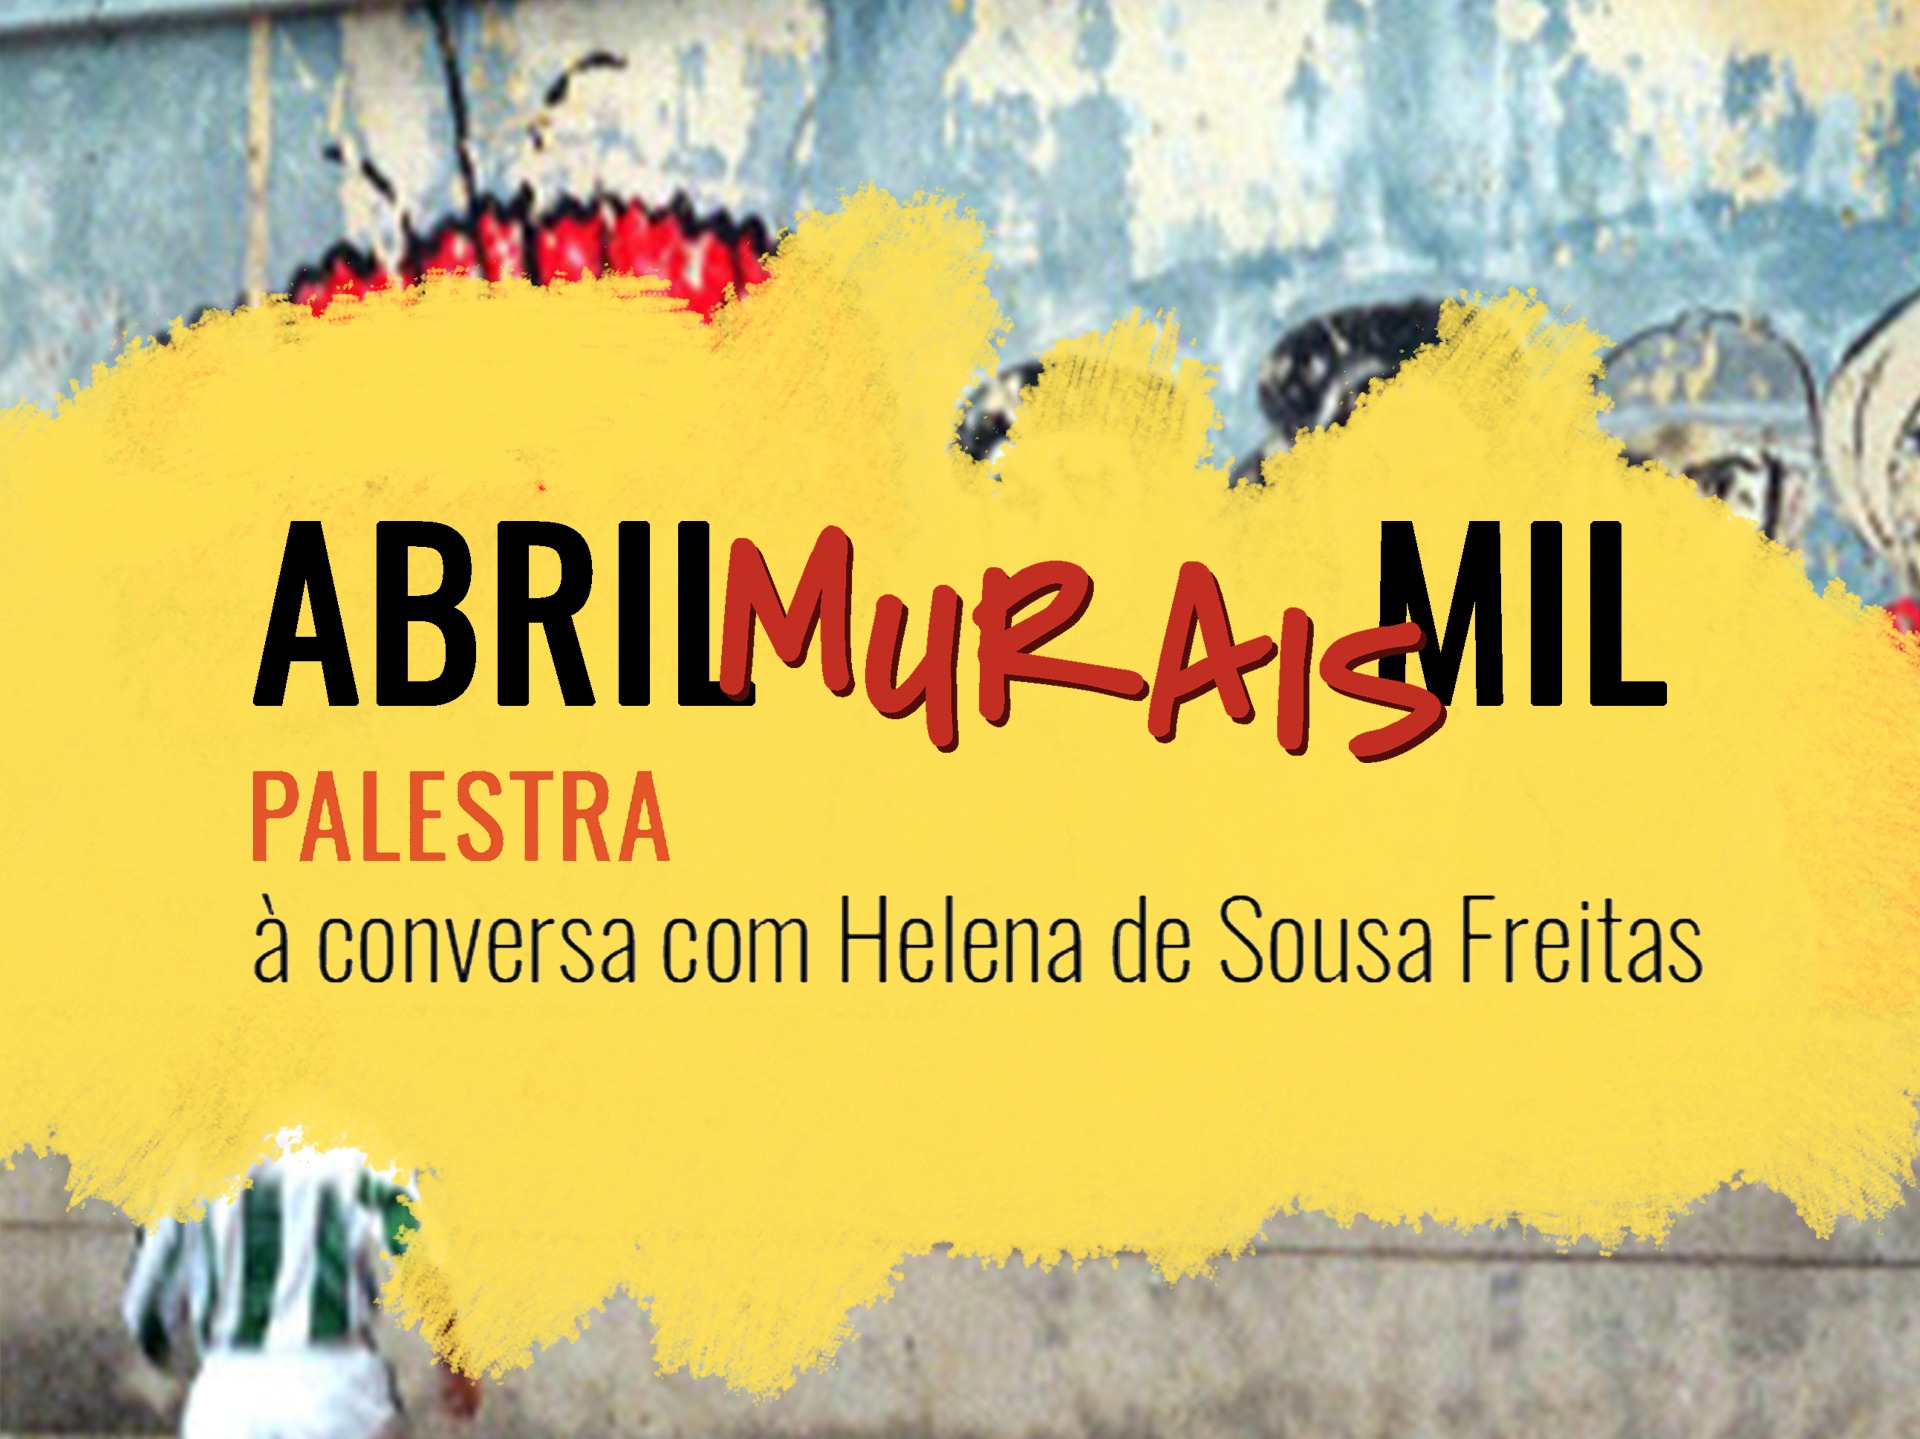 Abril, Murais Mil - À Conversa com Helena de Sousa Freitas